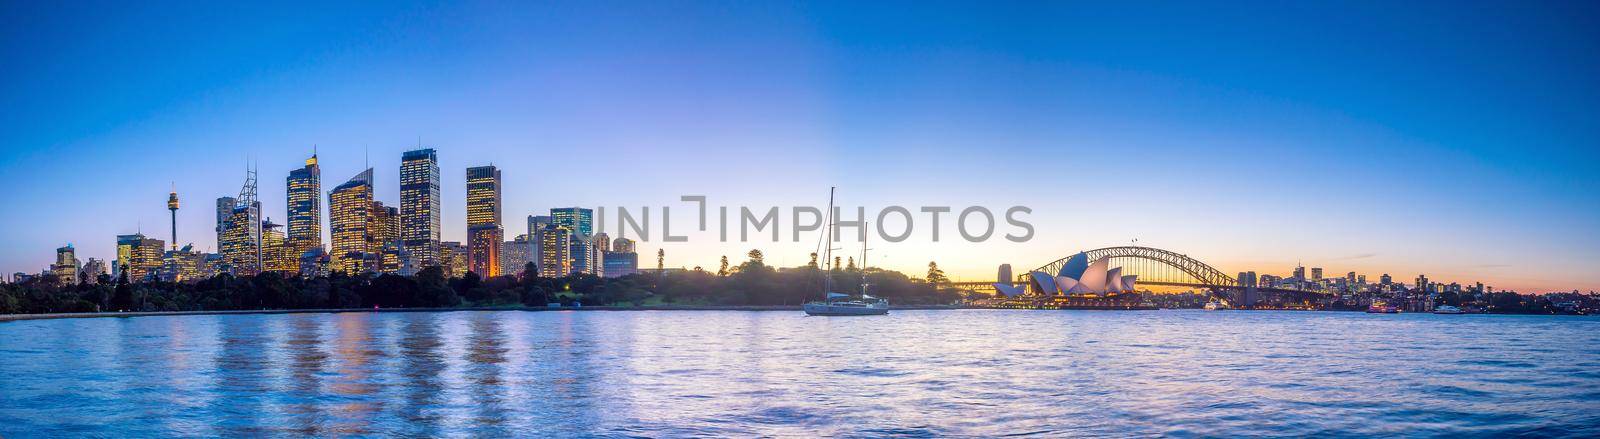 Downtown Sydney skyline by f11photo